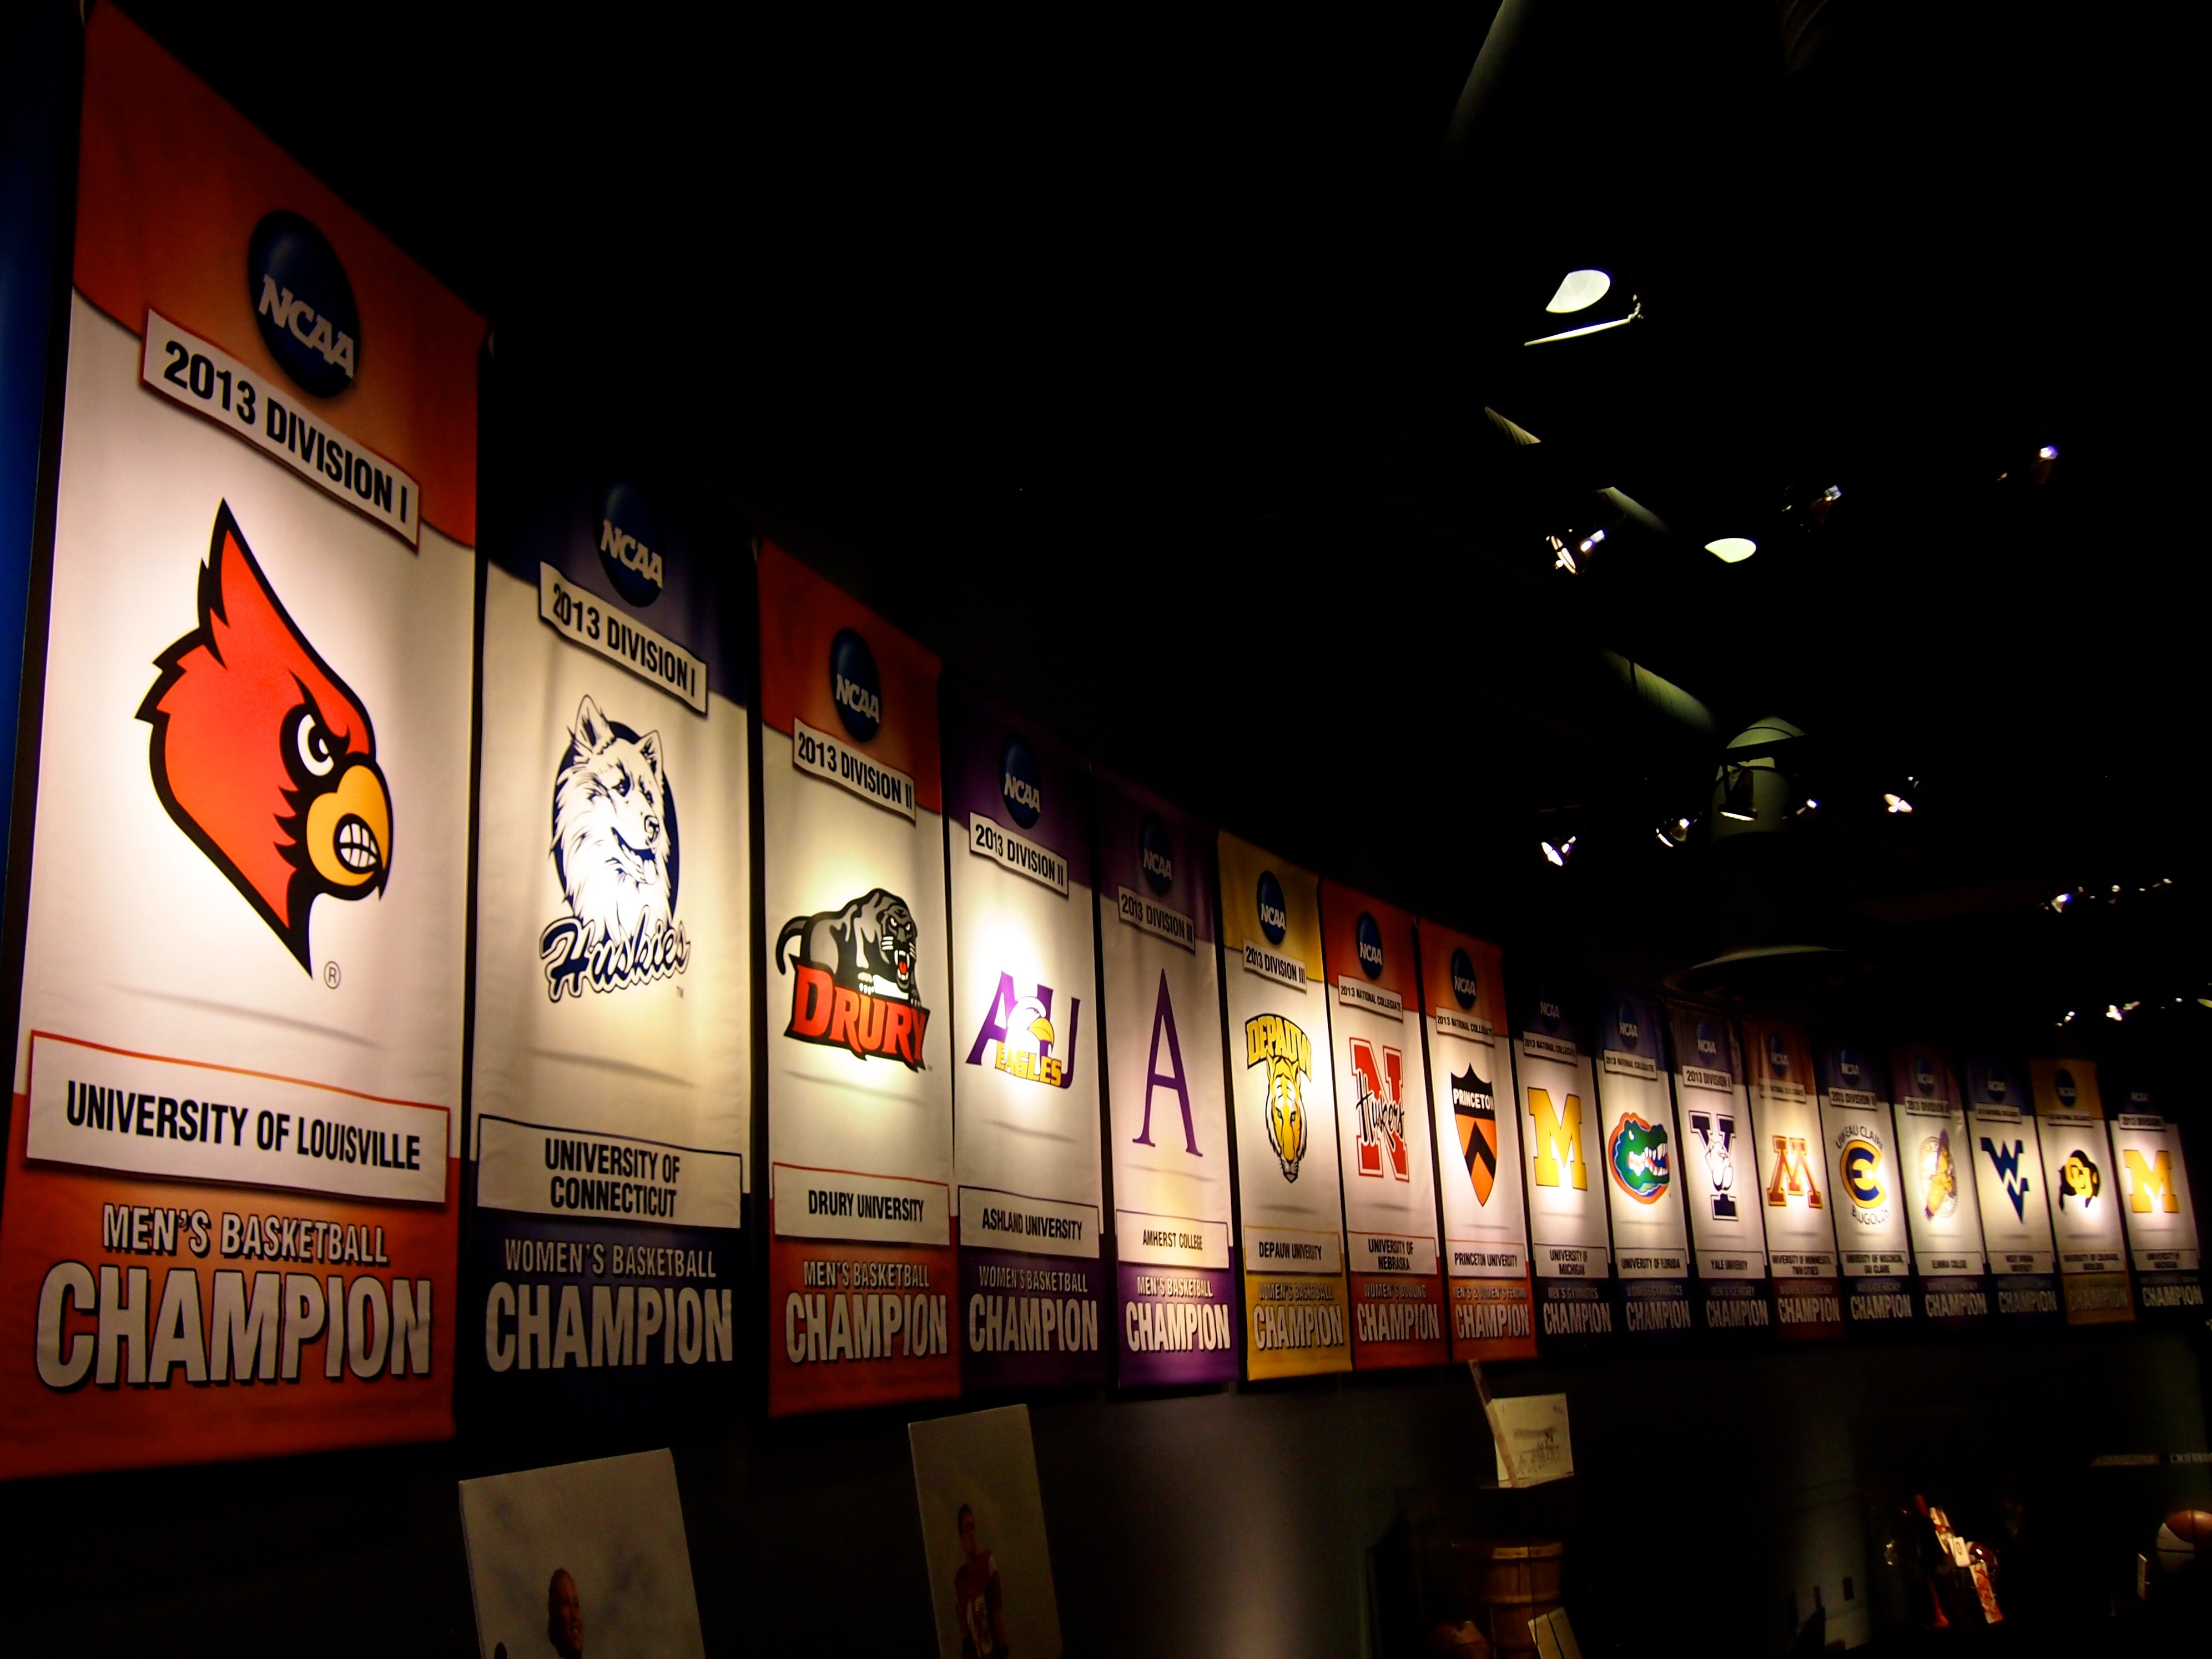 NCAA Basketball championship banners.